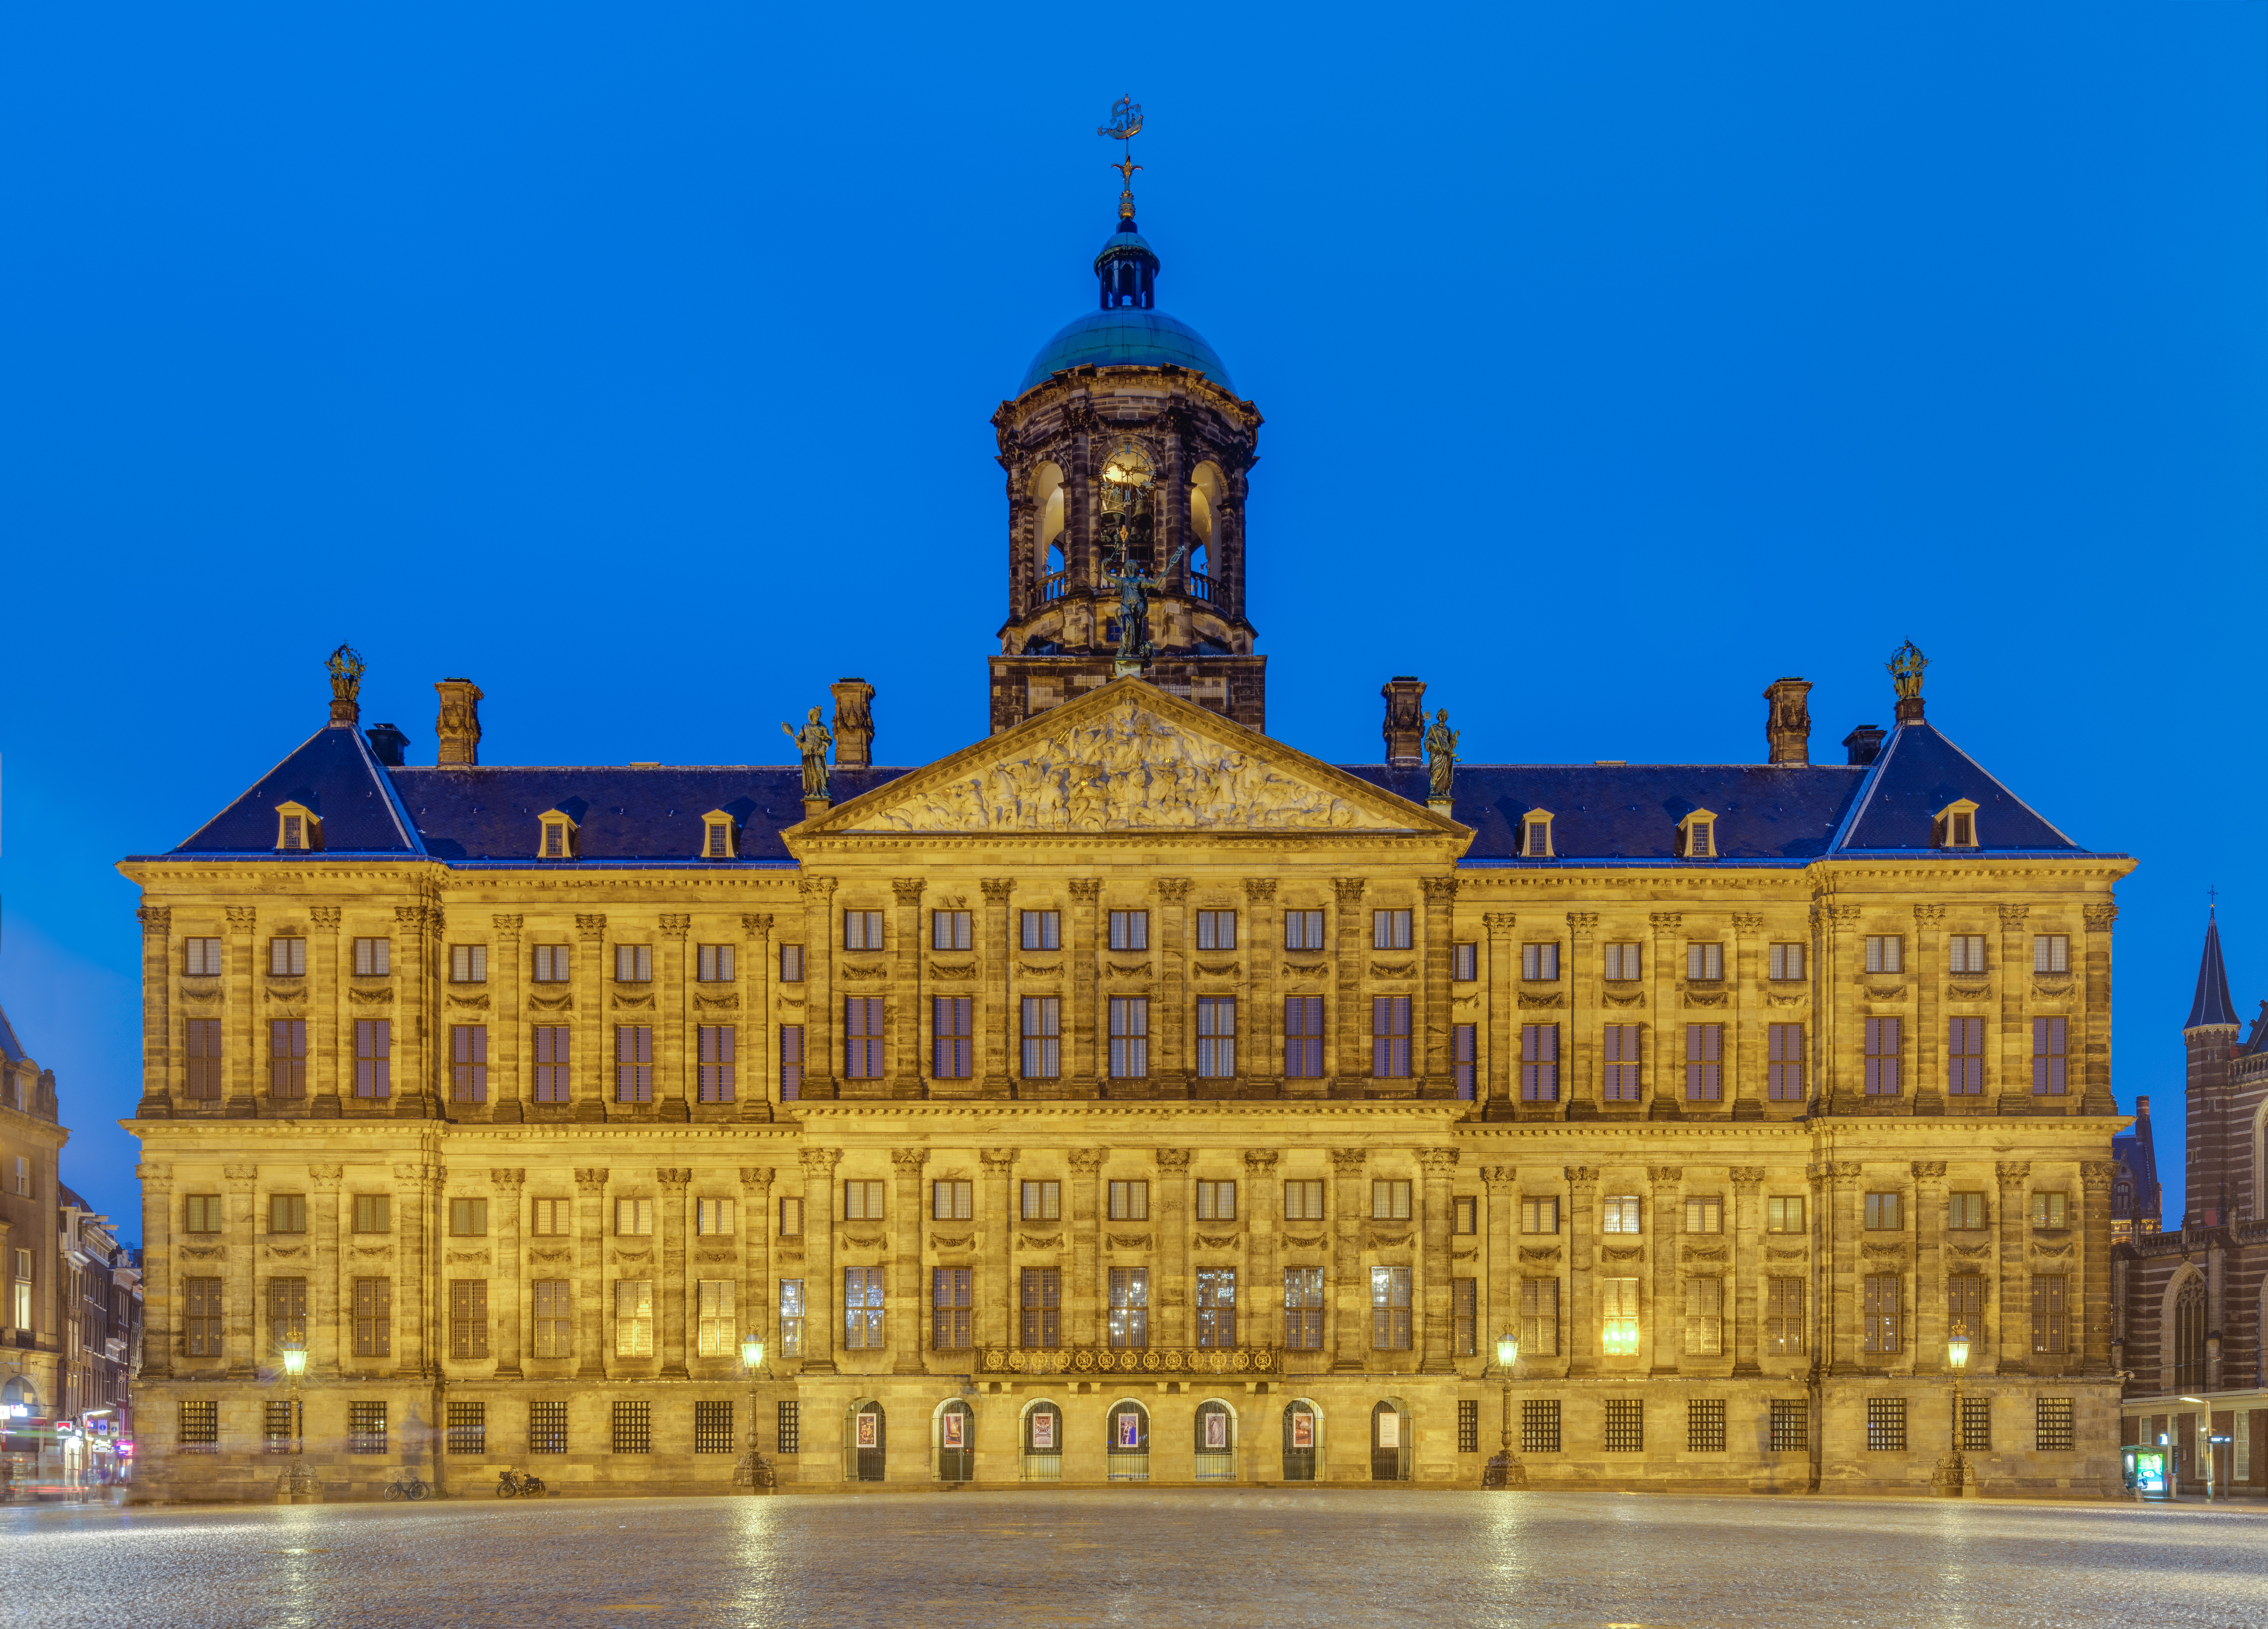 Royal Palace of Amsterdam - Wikipedia